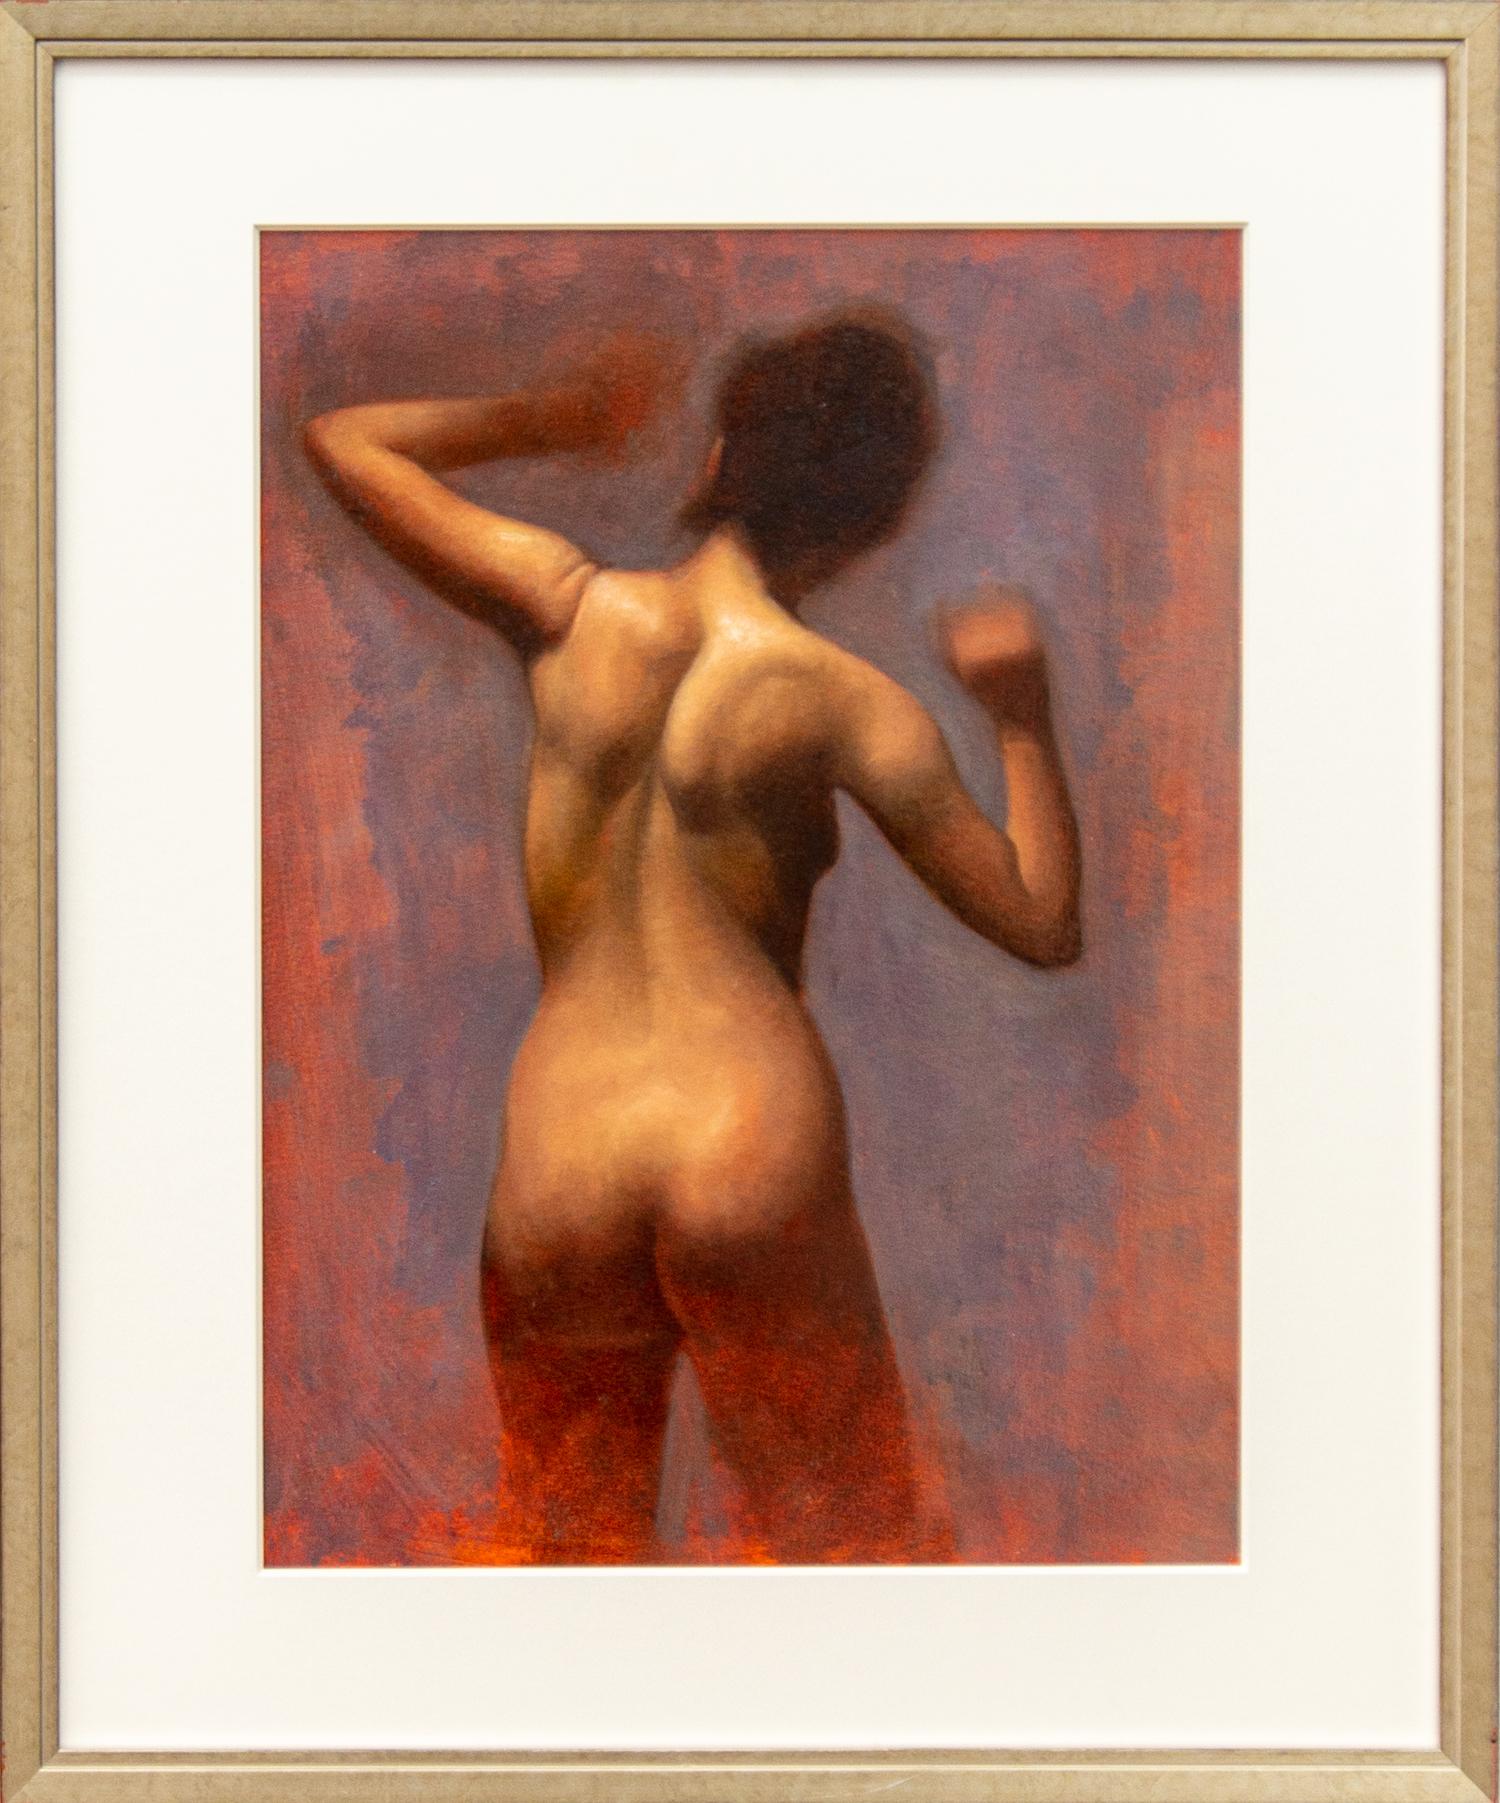 Nude zurück - weicher, farbenfroher, abstrahierter figurativer Akt, weiblicher Akt, Öl auf Papier – Painting von Daniel Hughes